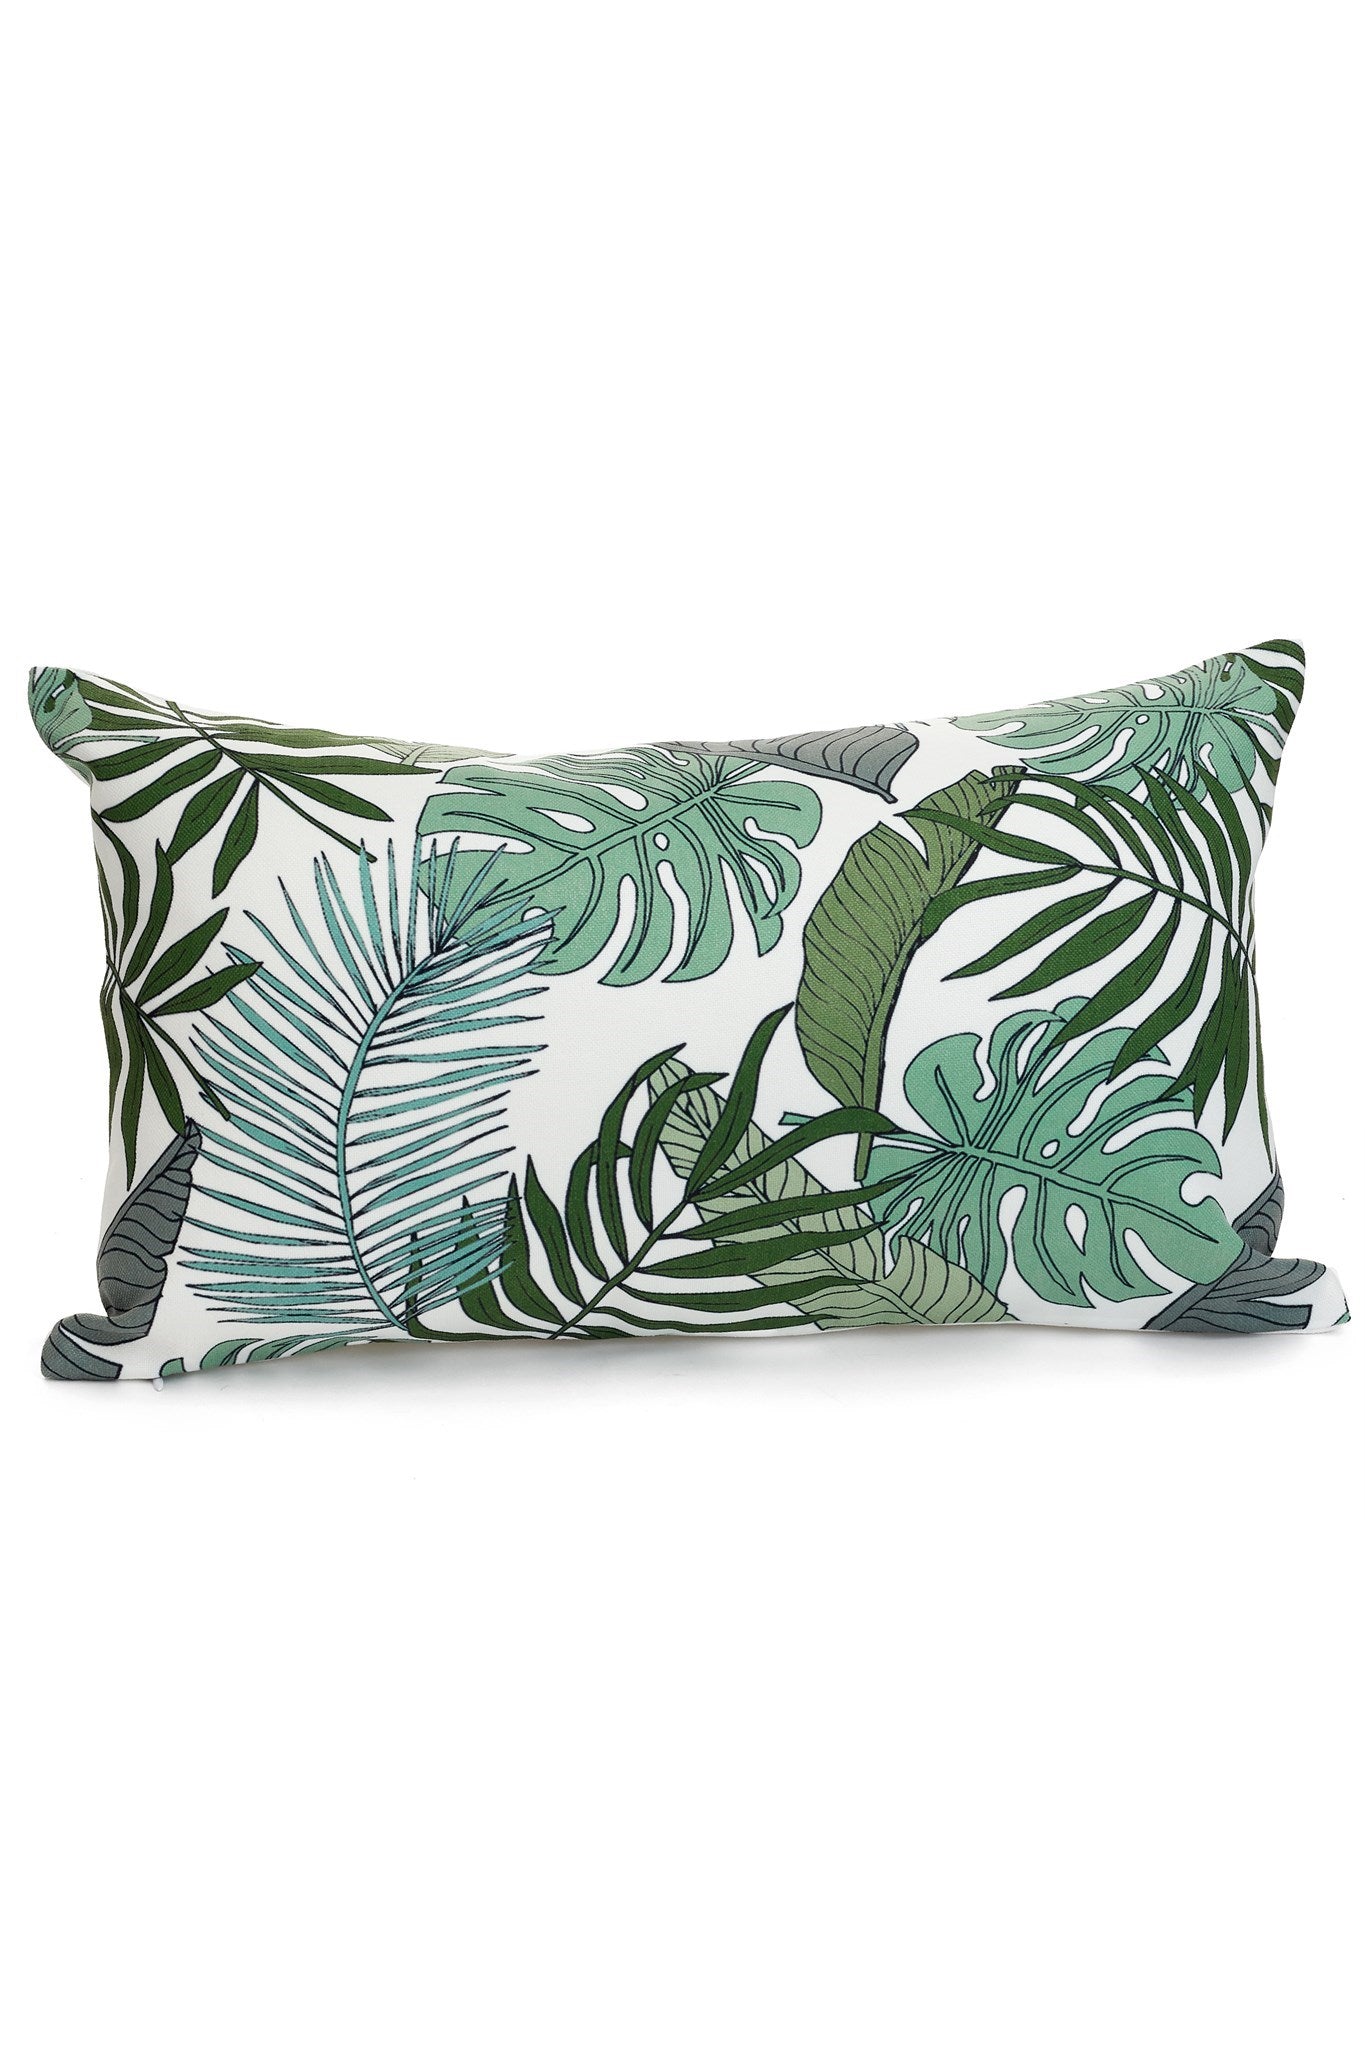 Tropical Lumbar Outdoor Throw Pillow (12" x 20")